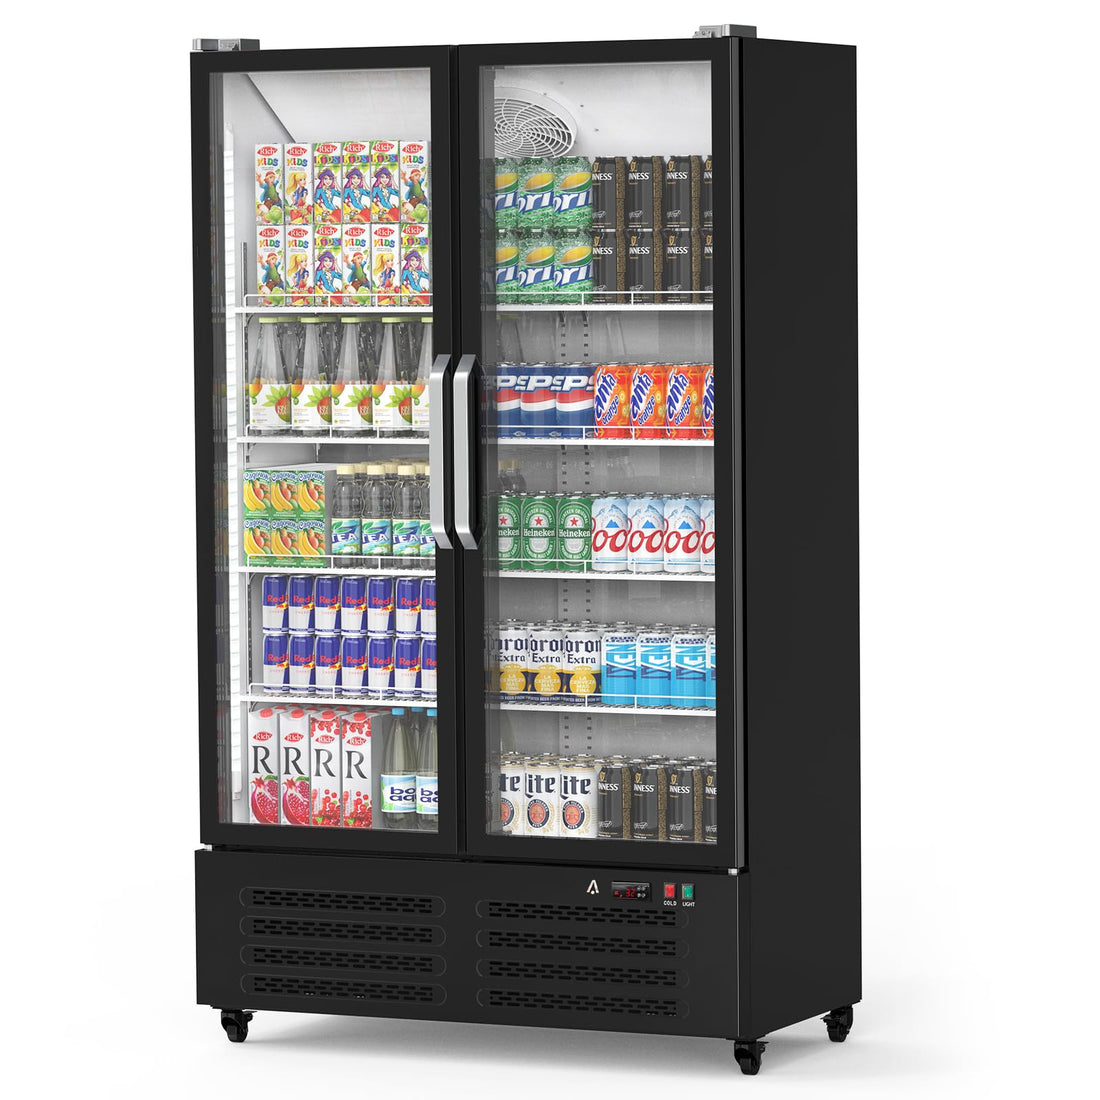 Commercial Refrigerator, 2 Door Display Fridge Merchandiser Upright Beverage Cooler, Double Glass Door Fridge with Adjustable Shelves & Drink Organizers, 25.5 Cu. Ft. Black